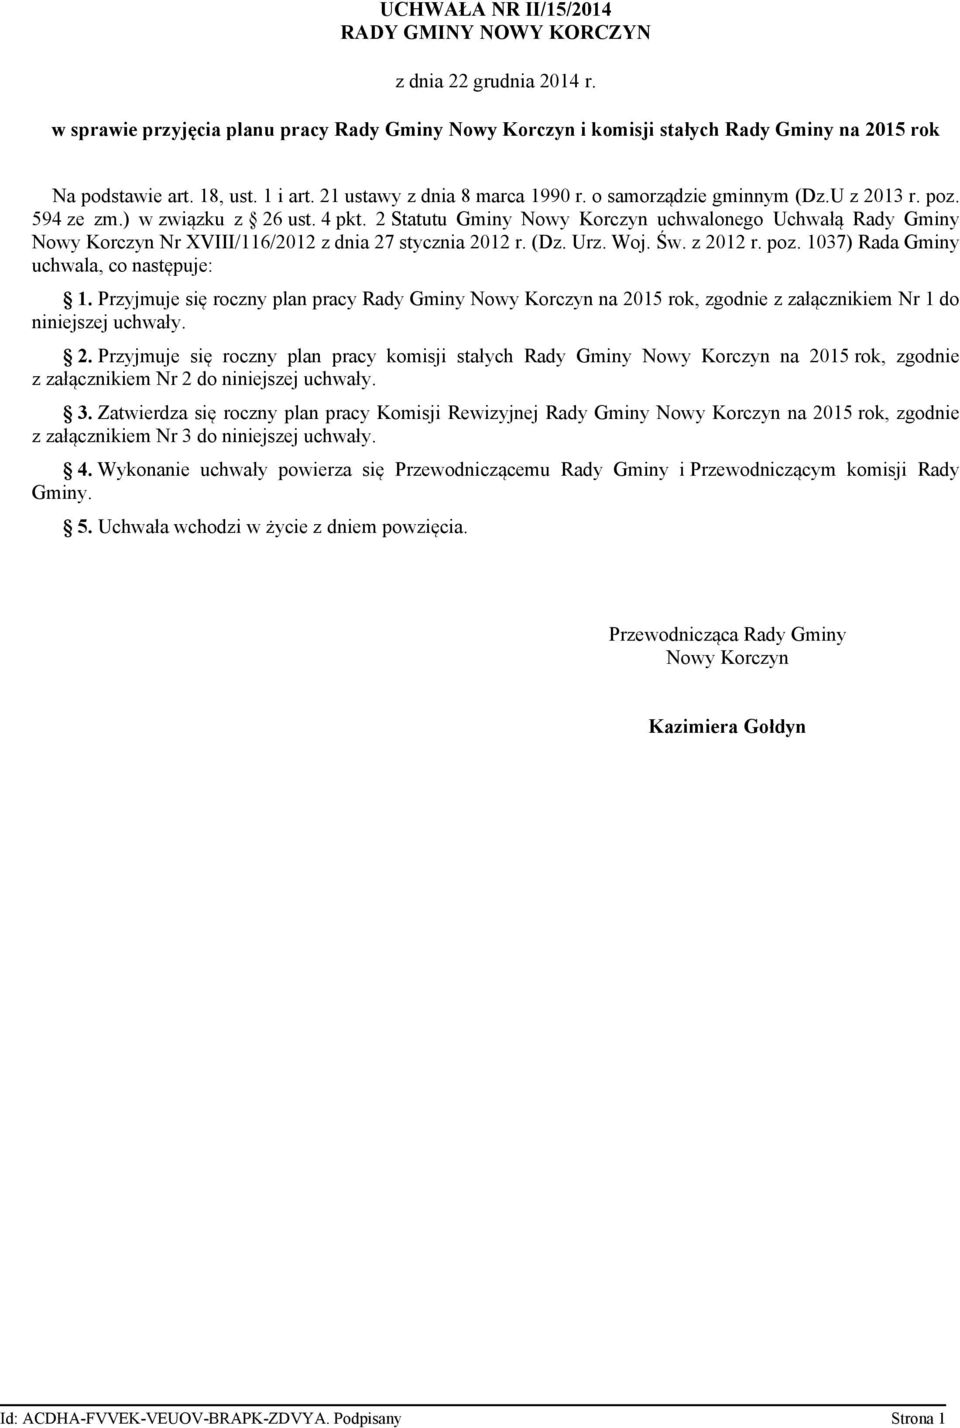 2 Statutu Gminy Nowy Korczyn uchwalonego Uchwałą Rady Gminy Nowy Korczyn Nr XVIII/116/2012 z dnia 27 stycznia 2012 r. (Dz. Urz. Woj. Św. z 2012 r. poz. 1037) Rada Gminy uchwala, co następuje: 1.